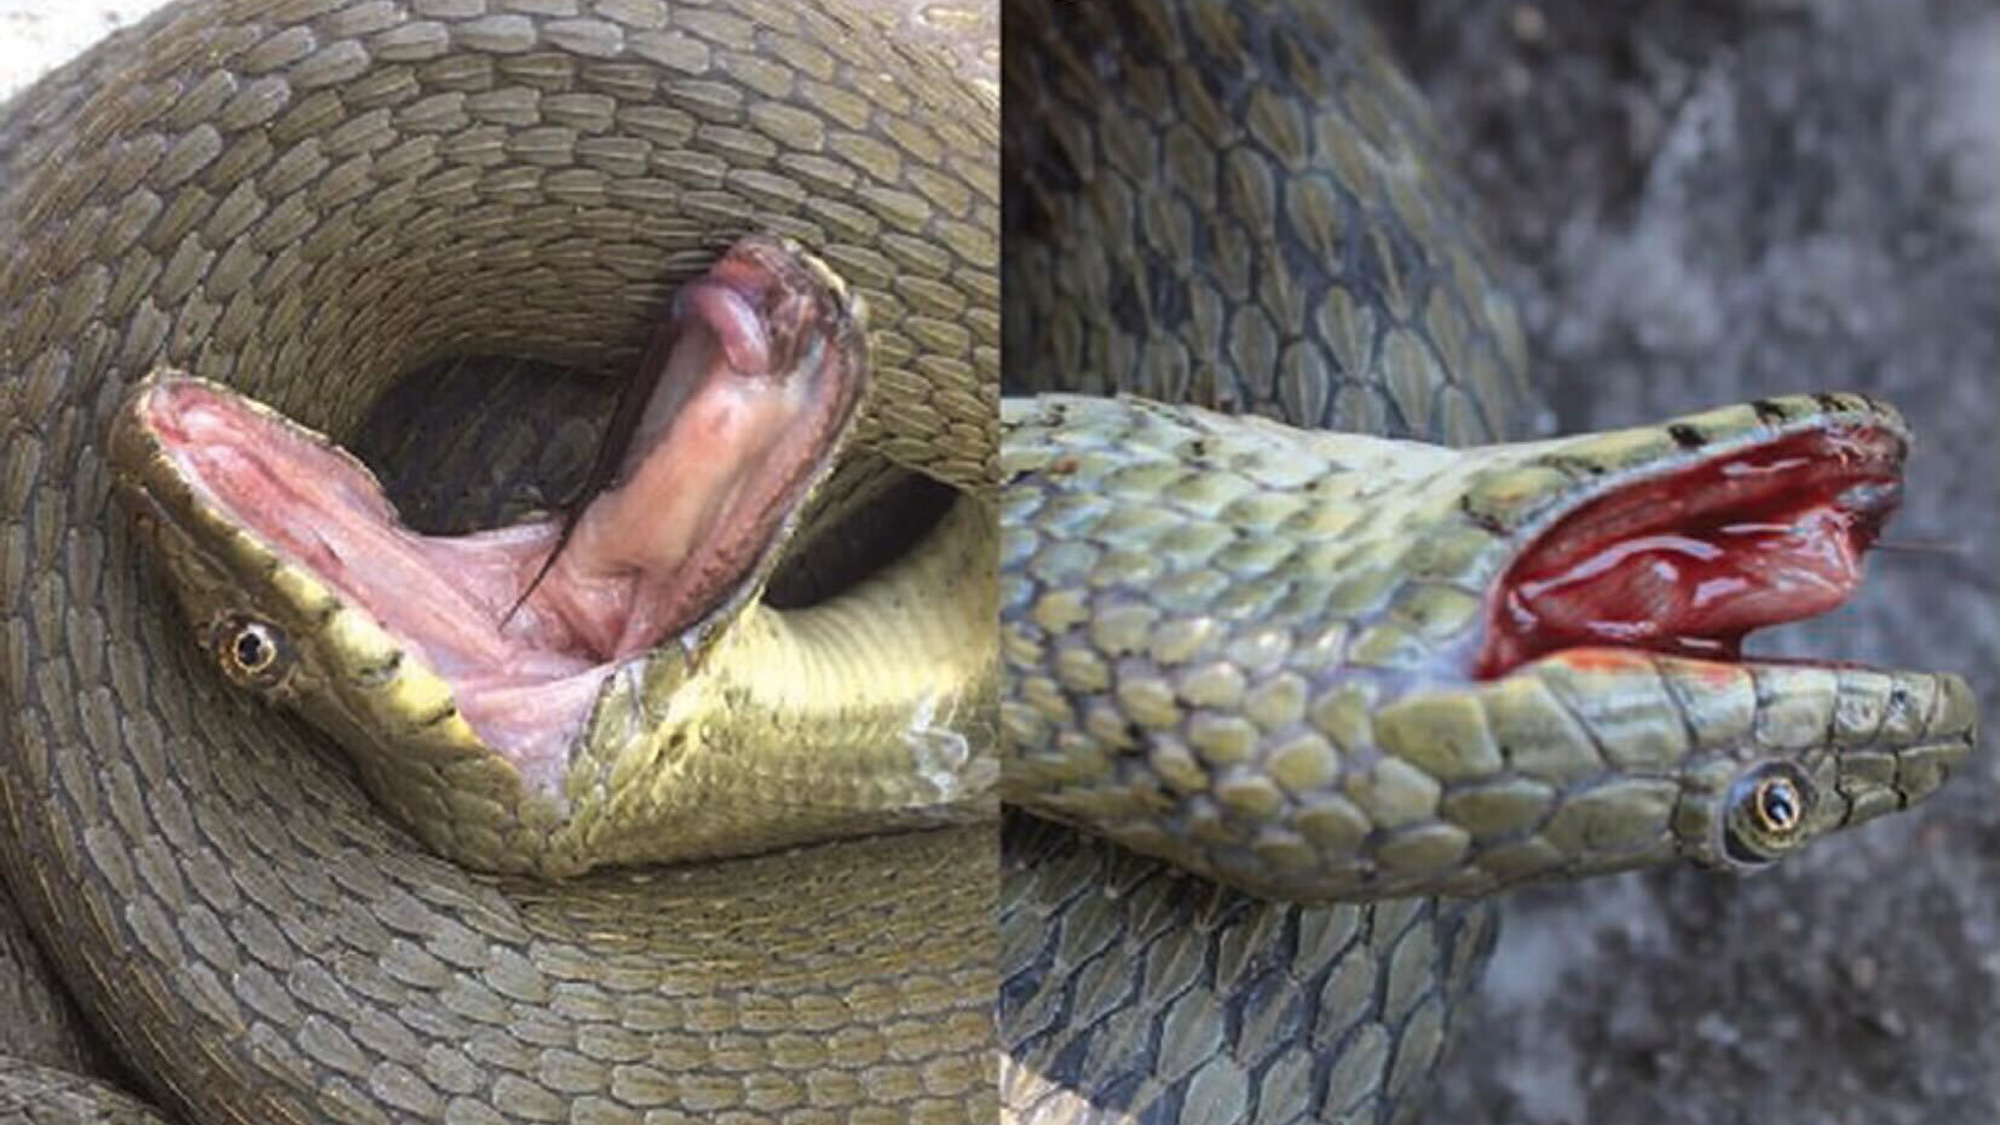 Estas serpientes se hacen las muertas, sangran y defecan para evitar ser devoradas